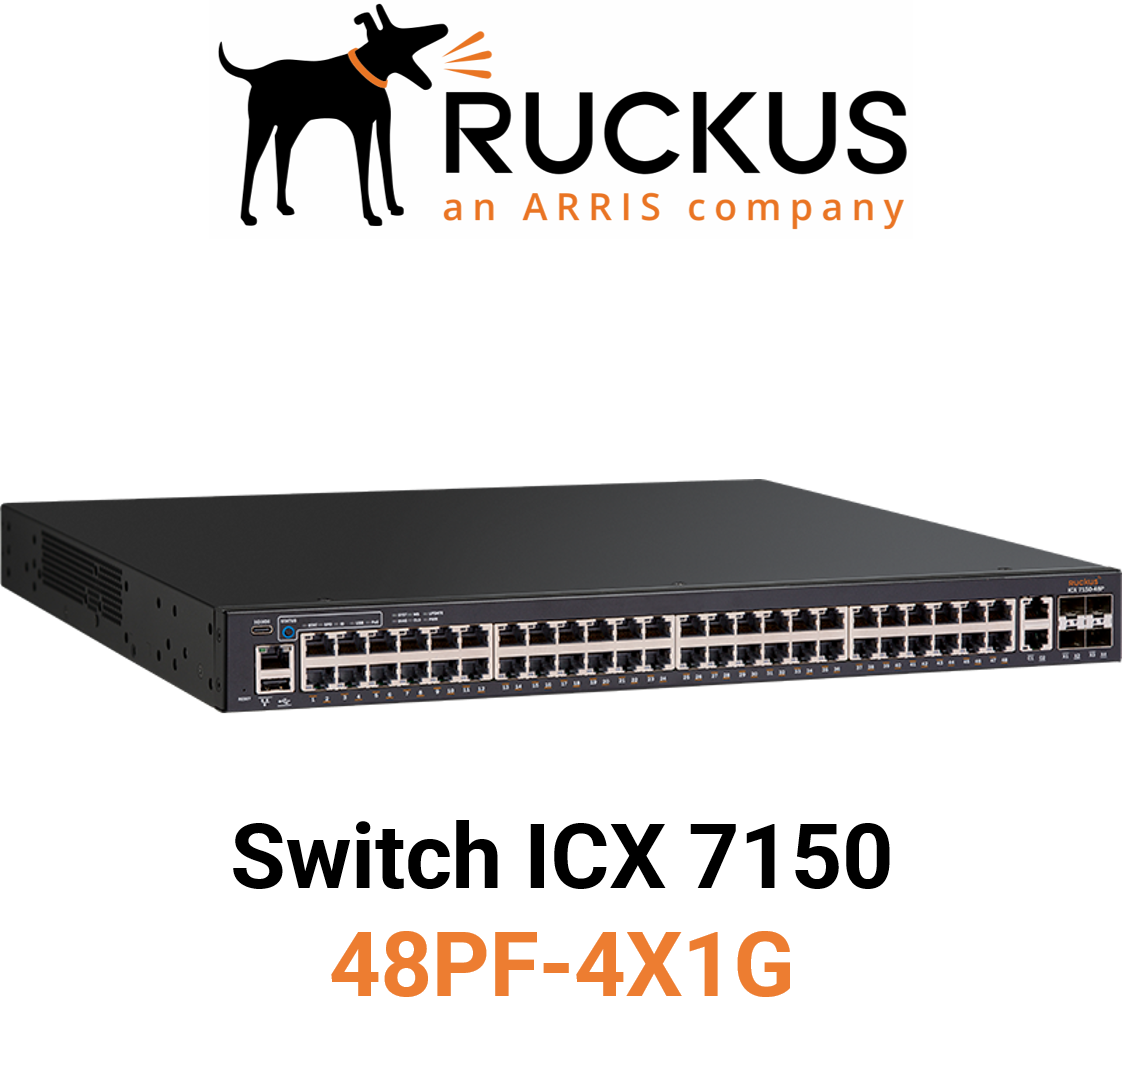 Ruckus ICX7150-48PF-4X1G Switch